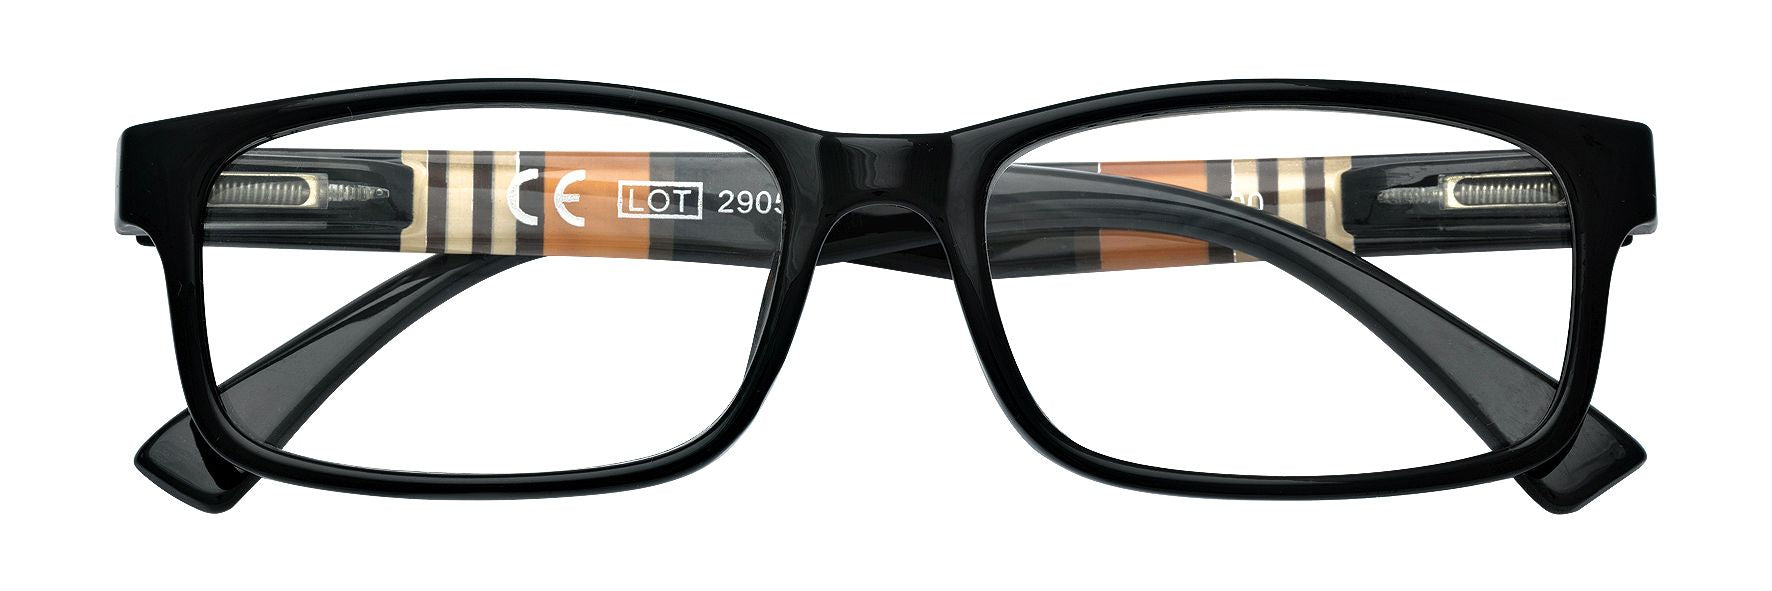 ZIPPO occhiali da lettura +2.50 31Z-B25-BLK250 - Conf. da 1